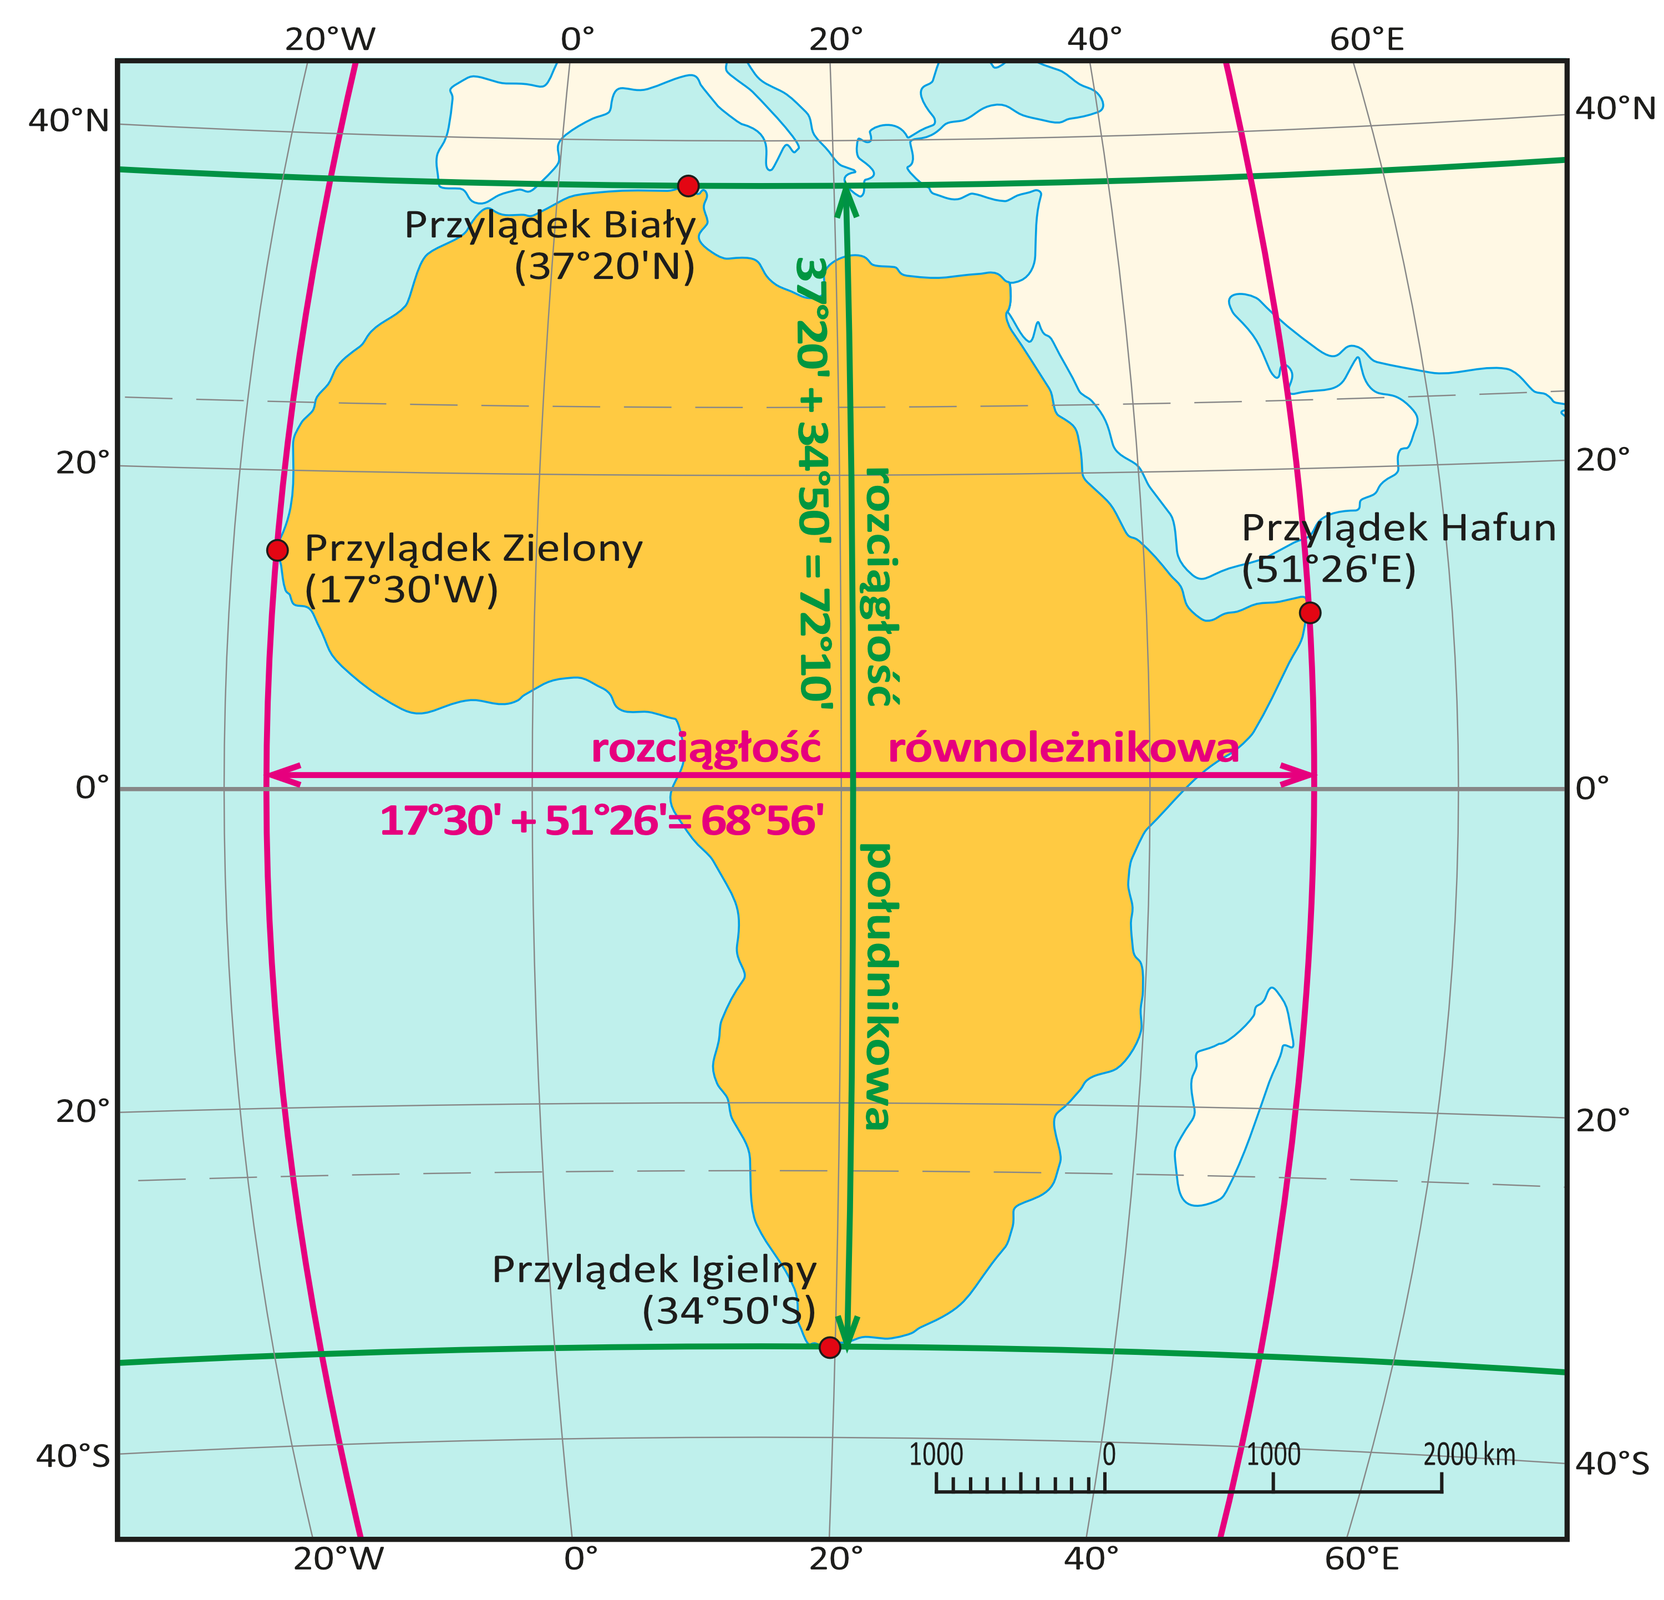 Ilustracja przedstawia mapę Afryki. Poziome linie równoleżników leżą na krańcach Afryki i przechodzą przez jej najdalej wysunięte punkty. Na północy to Przylądek Biały, na południu – Przylądek Igielny. Pionowa zielona linia zakończona strzałkami, biegnąca od jednego skrajnego równoleżnika do drugiego wskazuje rozciągłość pomiędzy tymi równoleżnikami. To rozciągłość południkowa. Dodatkowo znajduje się opis informujący o tym, co składa się na rozciągłość południkową Afryki. Napis brzmi: trzydzieści siedem stopni i dwadzieścia minut plus trzydzieści cztery stopnie i pięćdziesiąt minut równa się siedemdziesiąt dwa stopnie i dziesięć minut. Południk po lewej stronie przechodzi przez Przylądek Zielony. To najdalej wysunięty punkt Afryki na zachodzie. Południk po prawej stronie przechodzi przez Przylądek Hafun. To najdalej wysunięty punkt na wschodzie Afryki. Pozioma czerwona linia zakończona strzałkami, biegnąca pomiędzy skrajnymi południkami wskazuje rozciągłość pomiędzy tymi południkami. To rozciągłość równoleżnikowa. Dodatkowo znajduje się opis informujący o tym, co składa się na rozciągłość równoleżnikową Afryki. Napis brzmi: siedemnaście stopni i trzydzieści minut plus pięćdziesiąt jeden stopni i dwadzieścia sześć minut równa się sześćdziesiąt osiem stopni i pięćdziesiąt sześć minut.